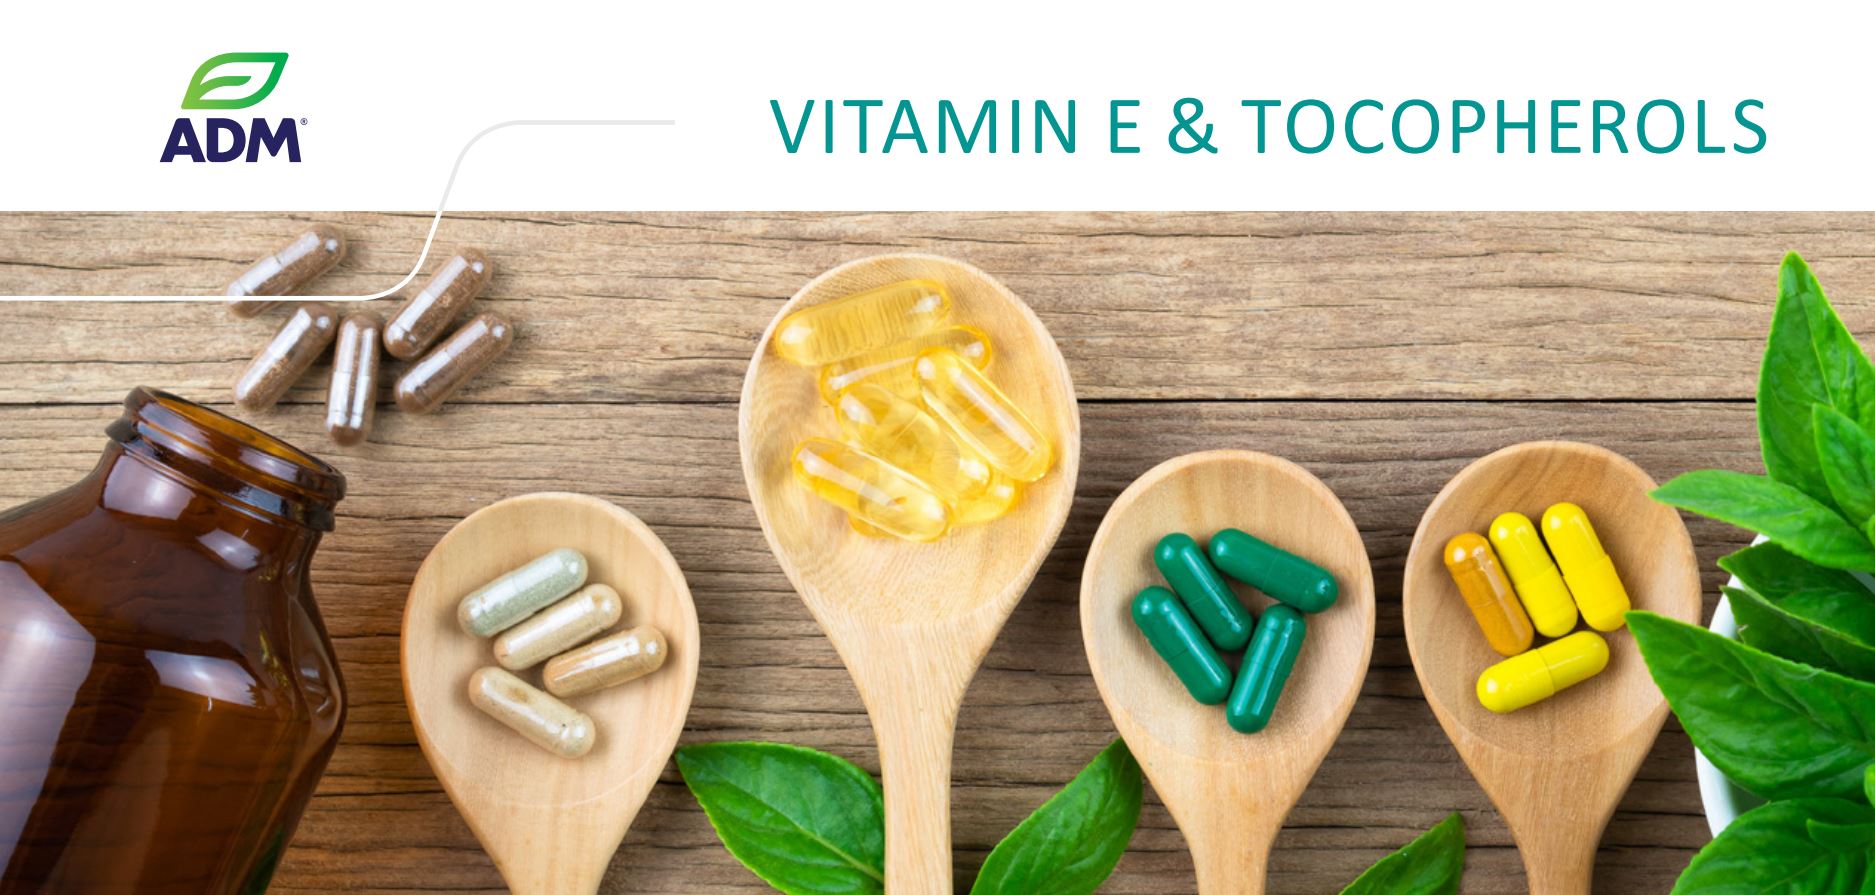 Vitamin E & Tocopherols